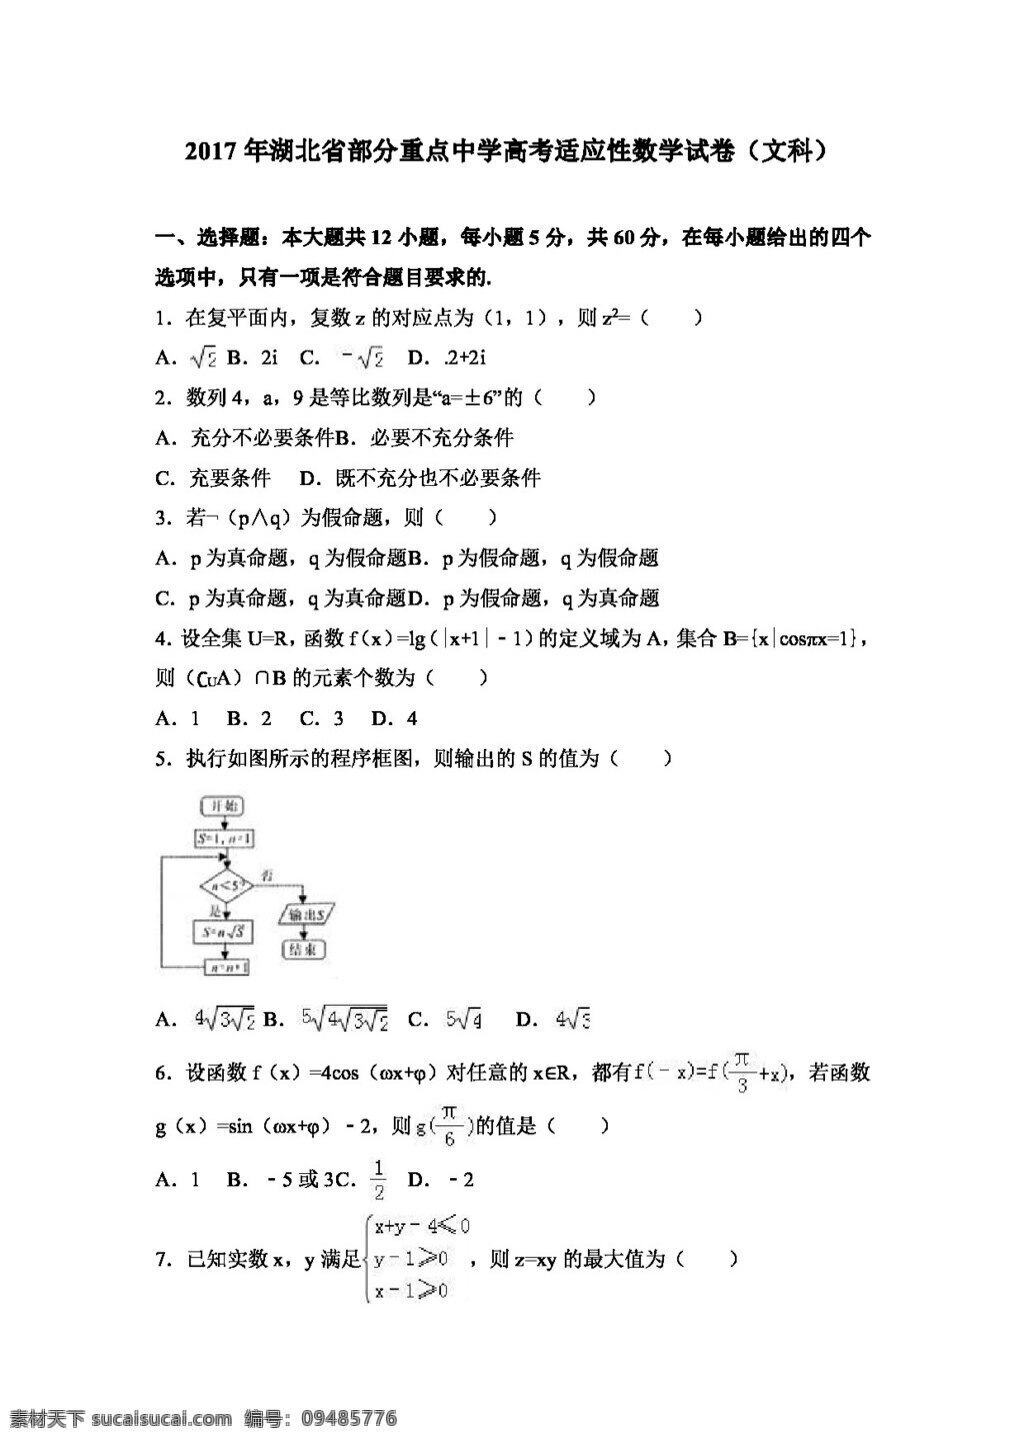 数学 人教 版 2017 年 湖北省 高考 适应性 数学试卷 文科 高考专区 人教版 试卷